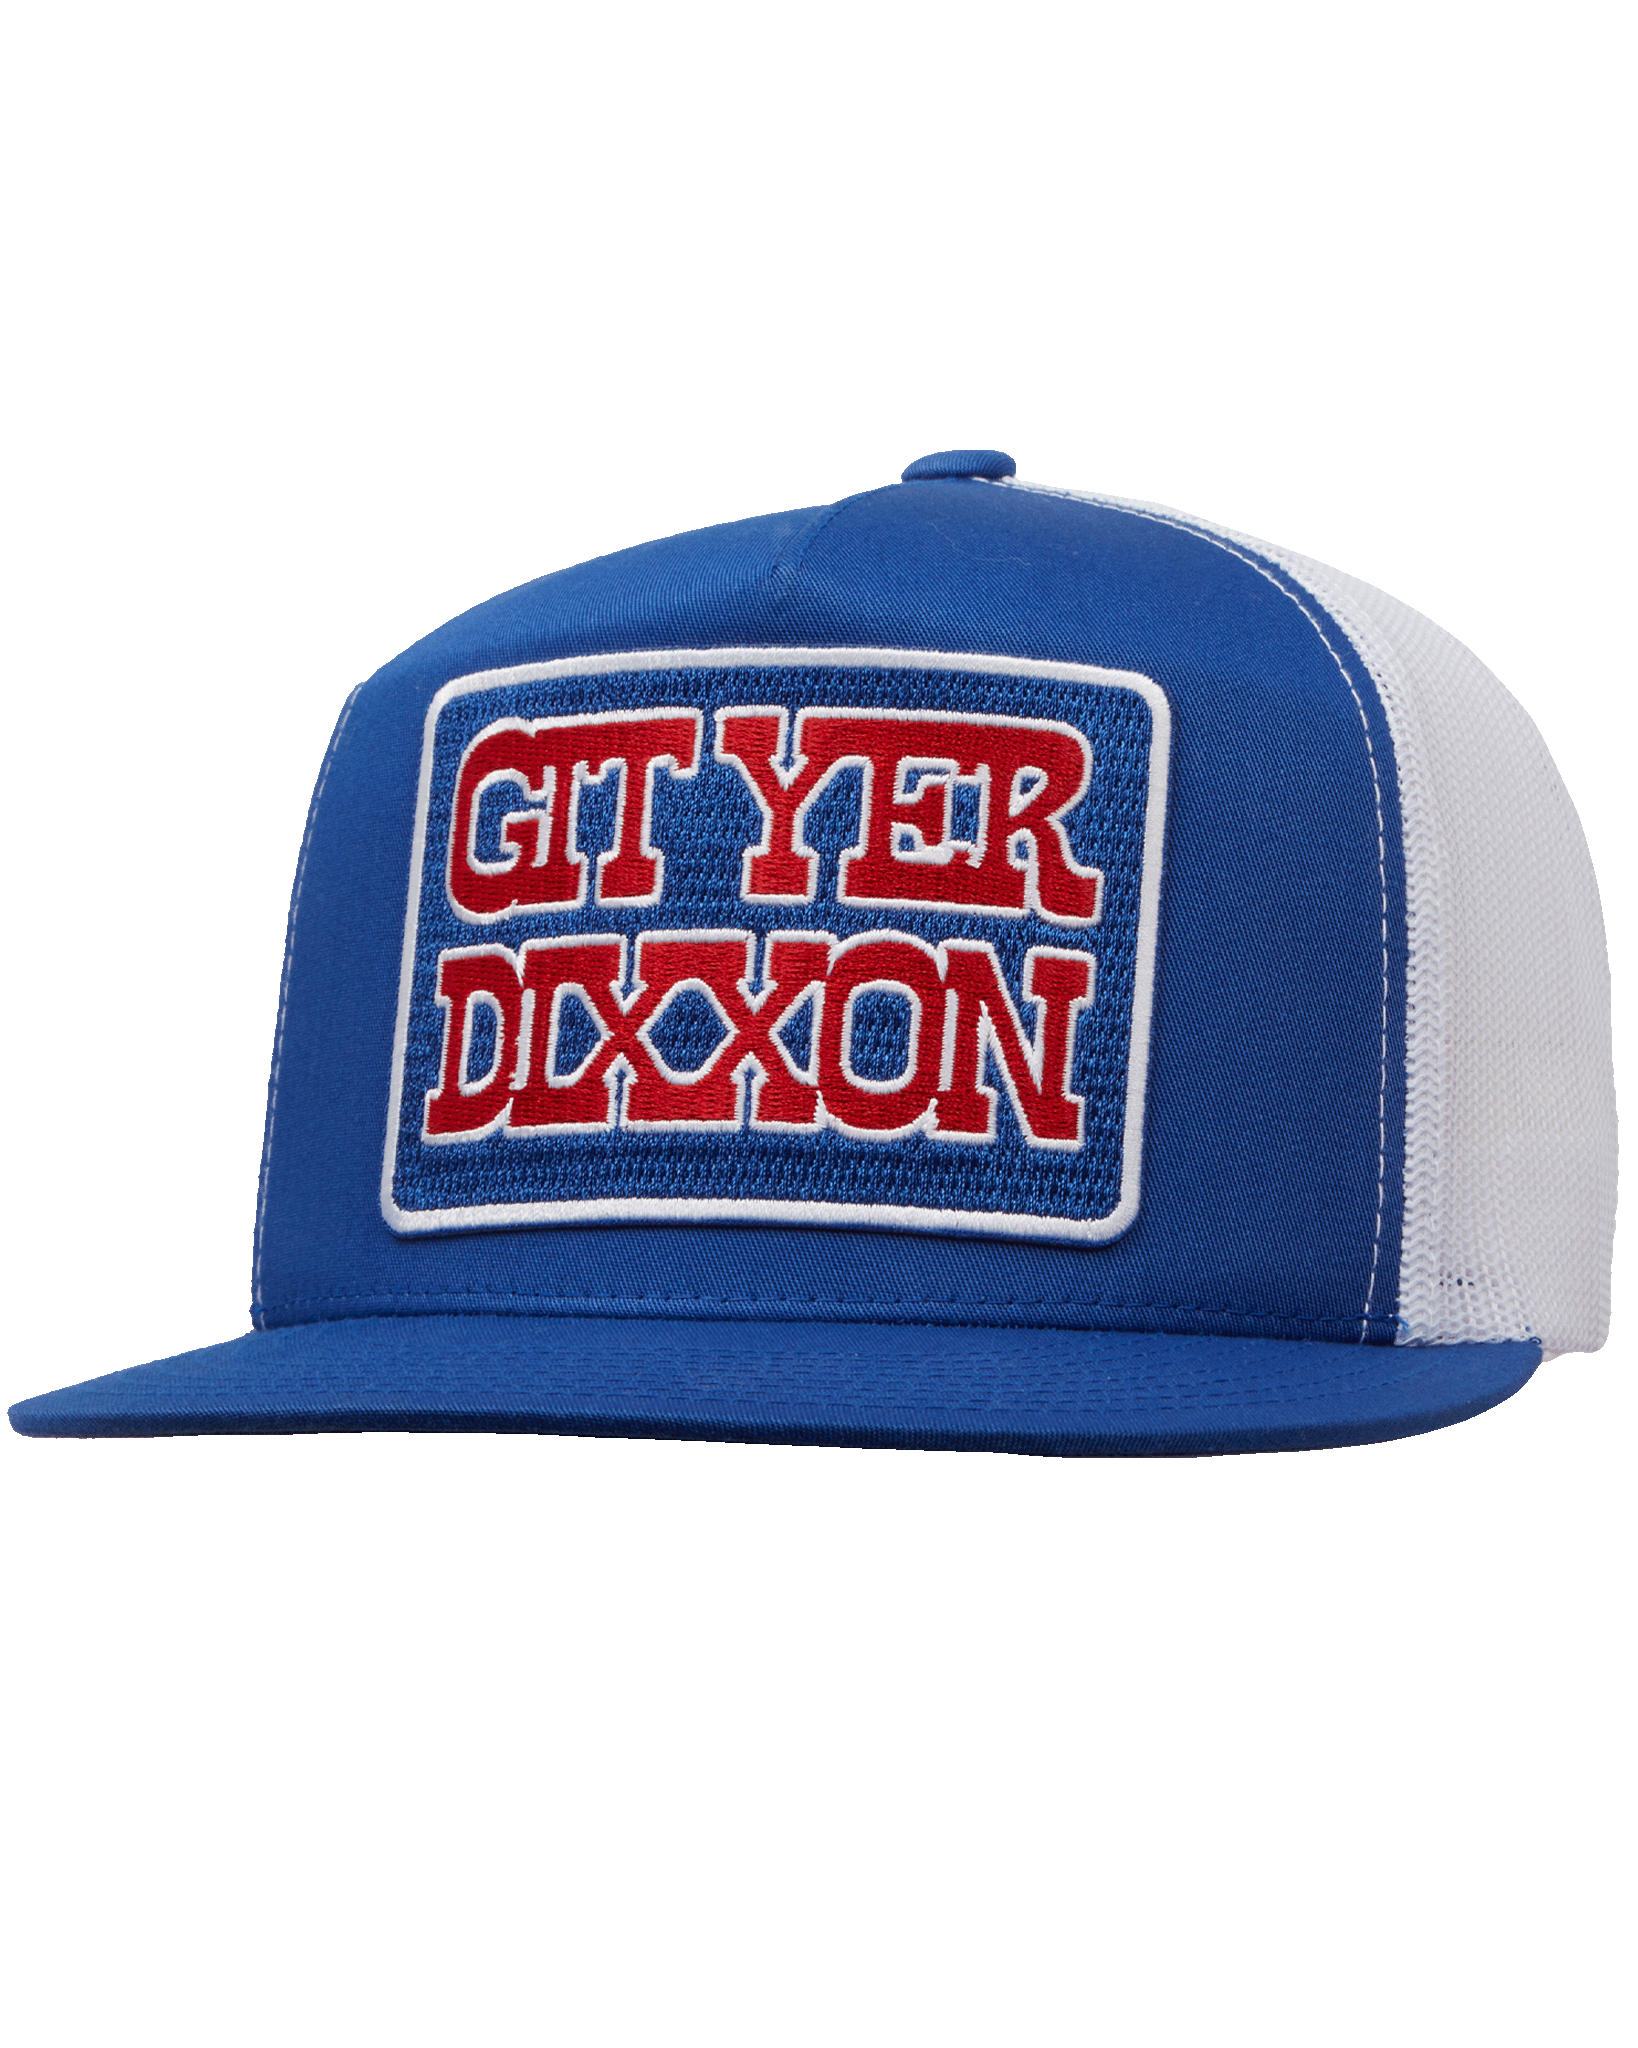 Git Yer Dixxon Flat Bill Trucker Snapback - Red, White, & Blue